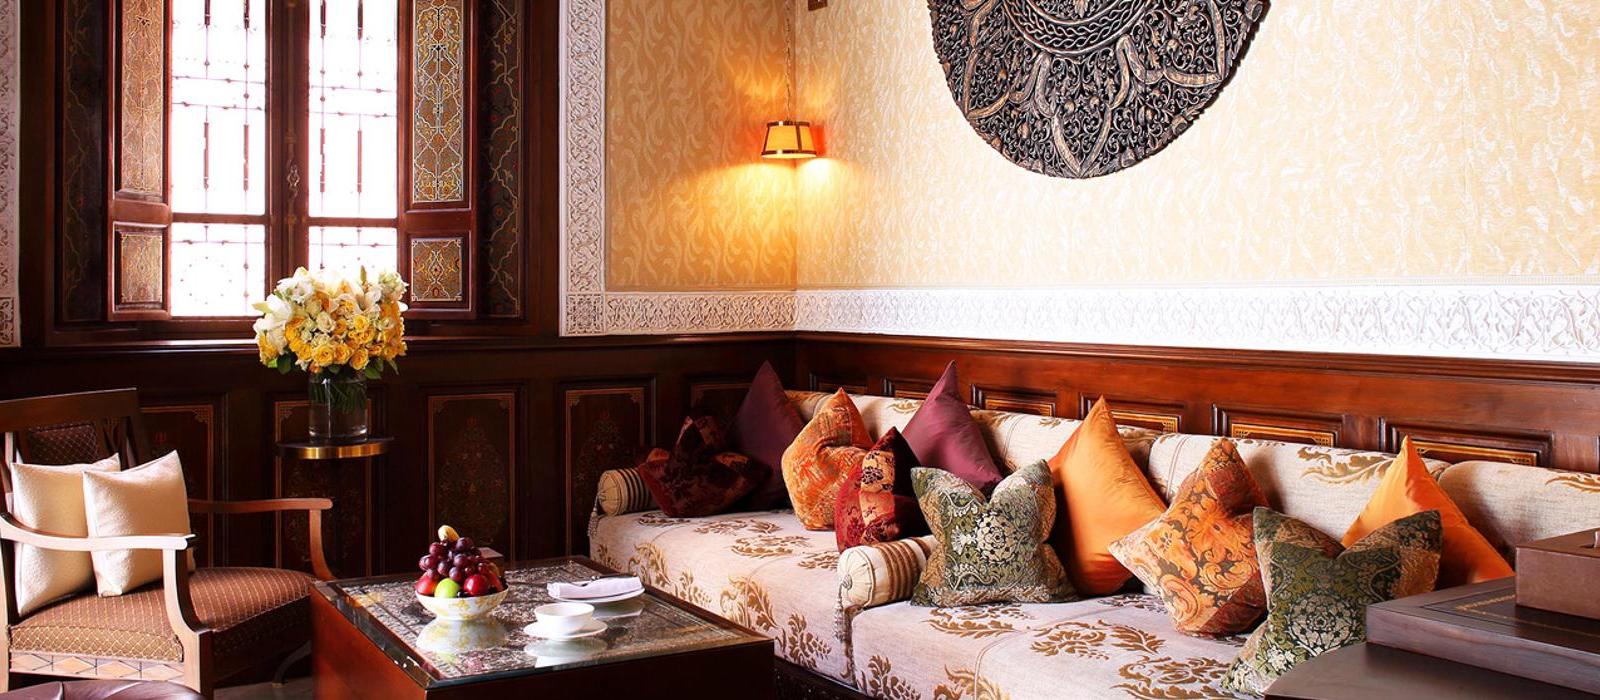 马拉喀什皇家曼苏尔酒店(Royal Mansour Marrakech) 图片  www.lhw.cn